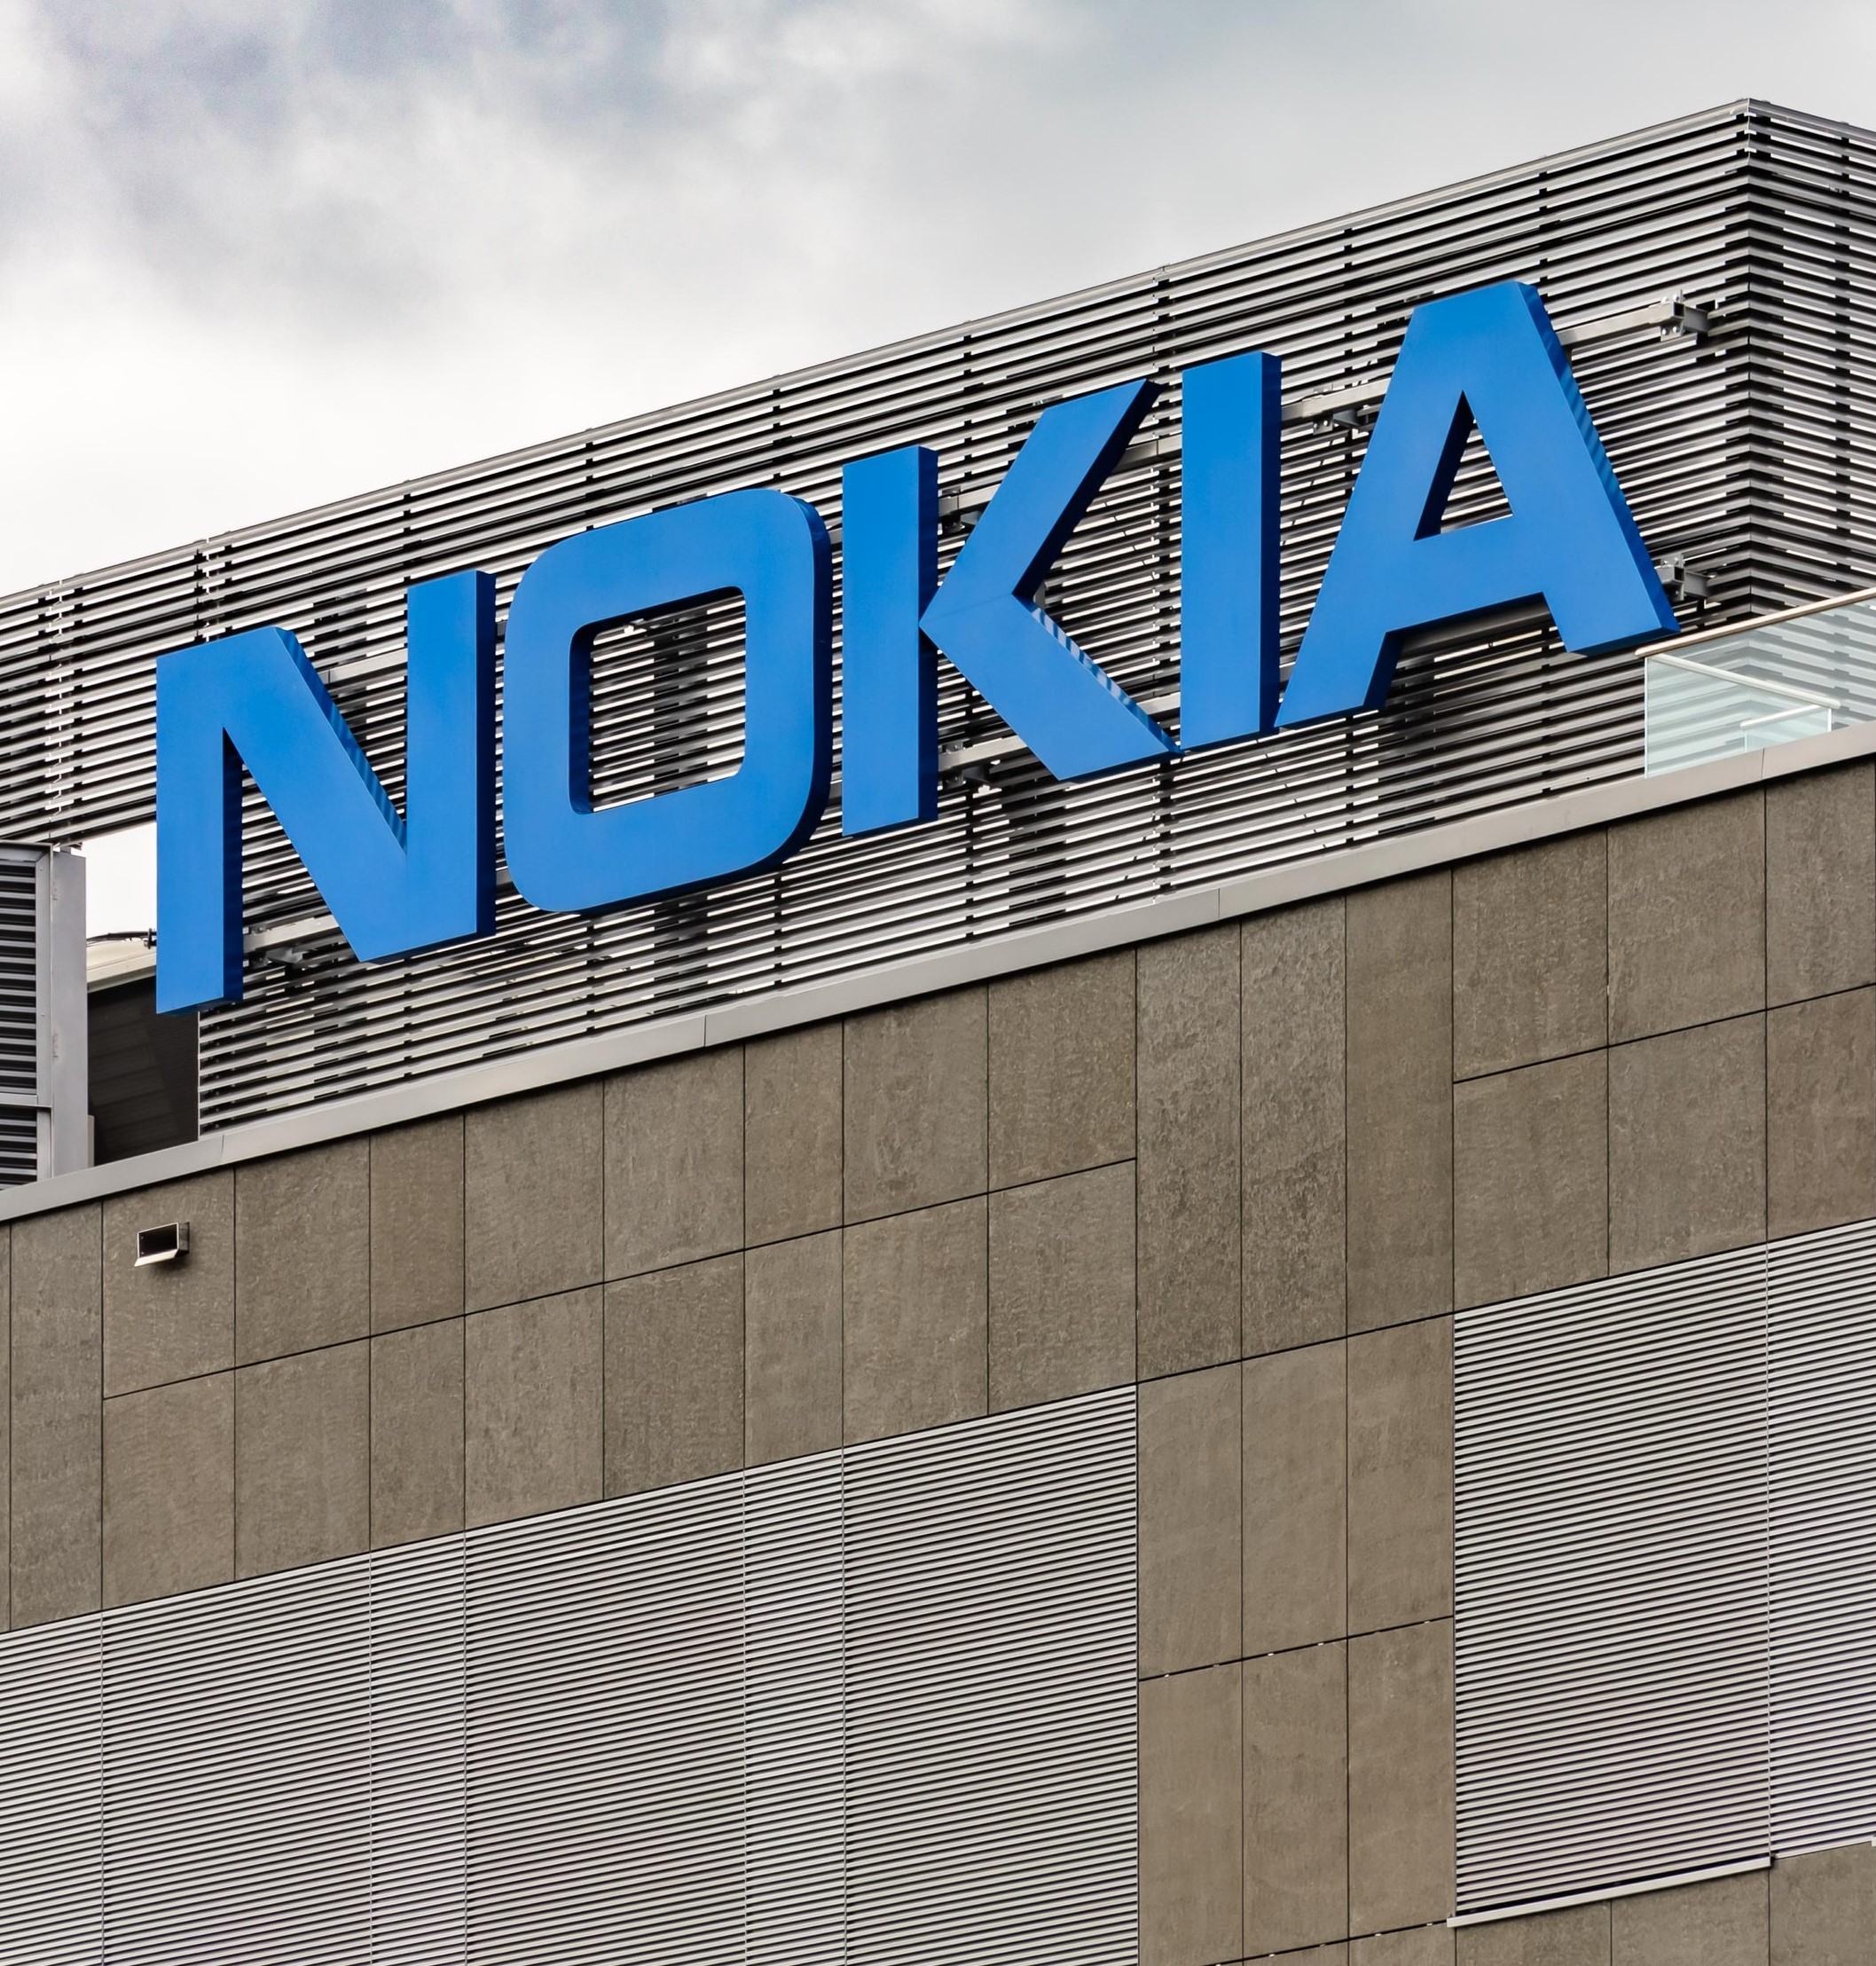 Kontrola stavu země a aktivace Nokia (HMD) - obrázek novinky na imei.info